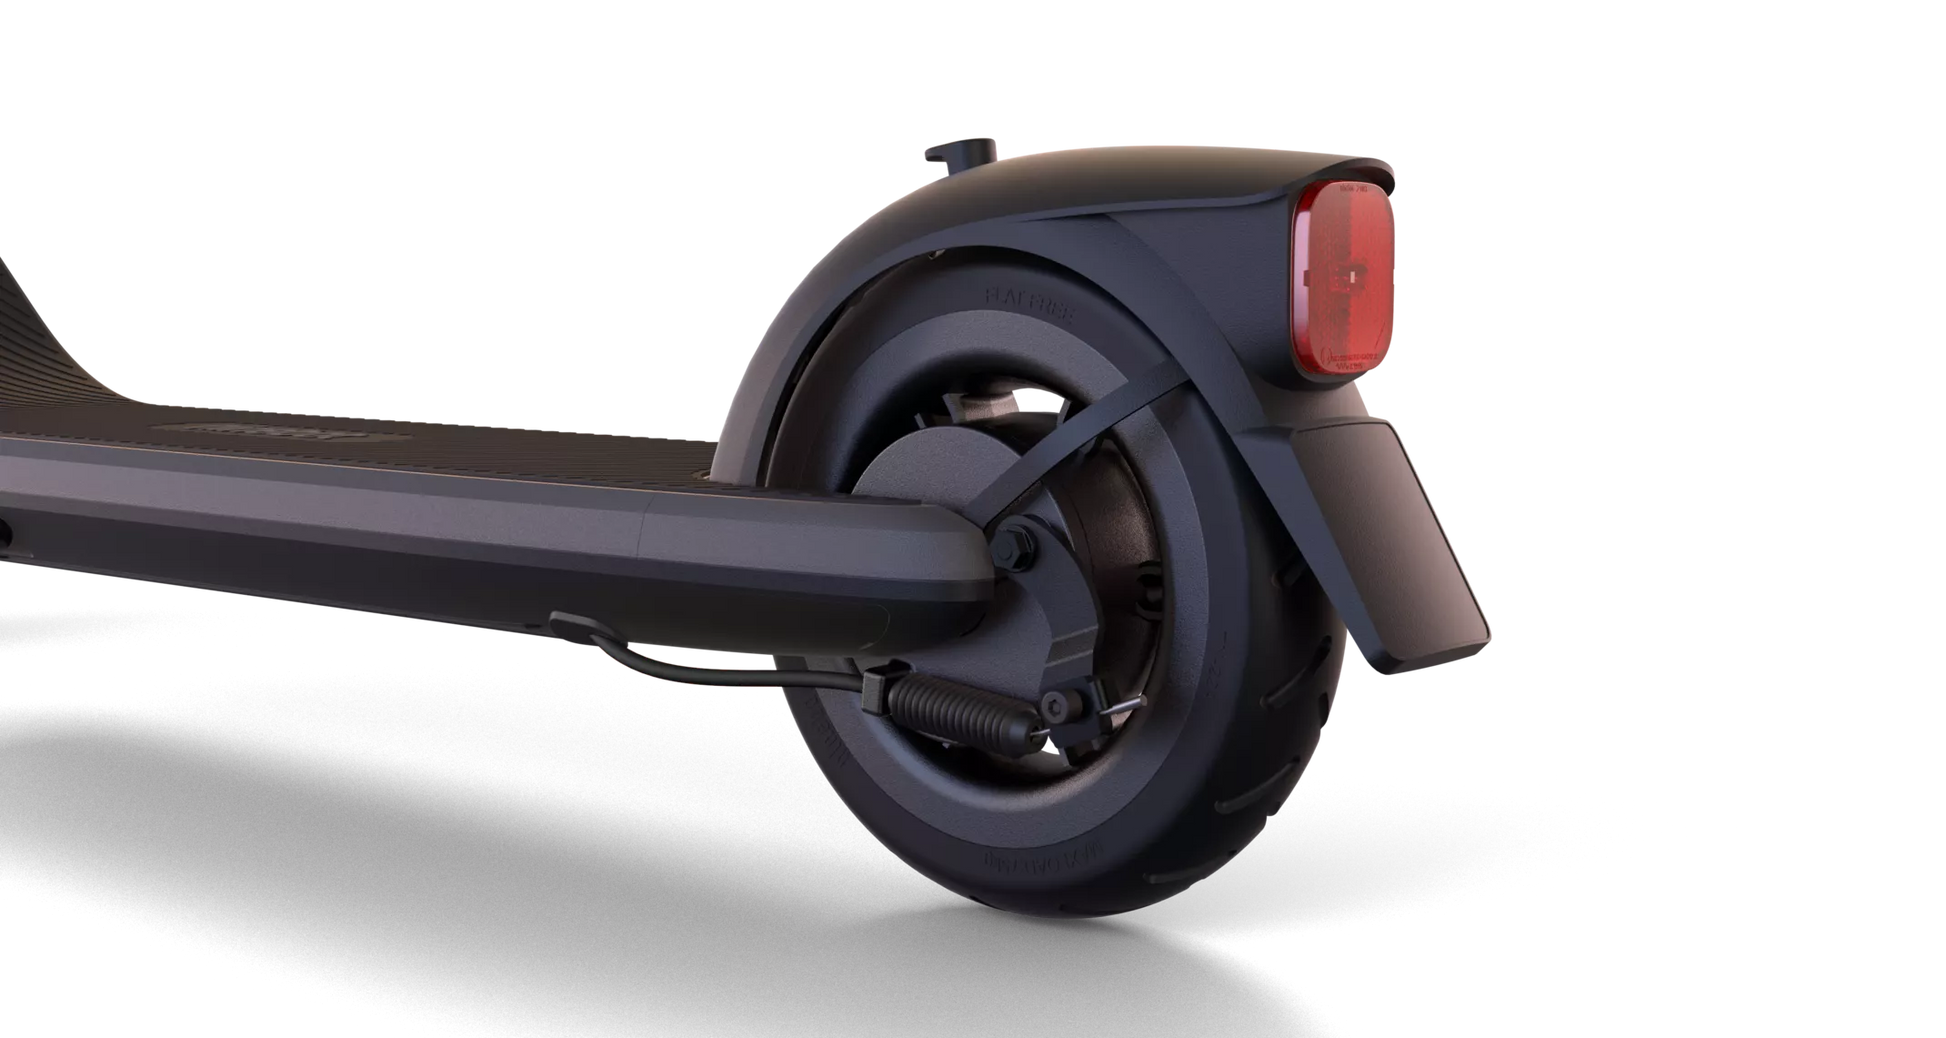 Trottinette électrique Ninebot KickScooter E2 Plus - Powered by Segway - Excellent Trottinettes par Segway - Ninebot - Seulement €299.00! Acheter maintenant sur Nexyo.fr